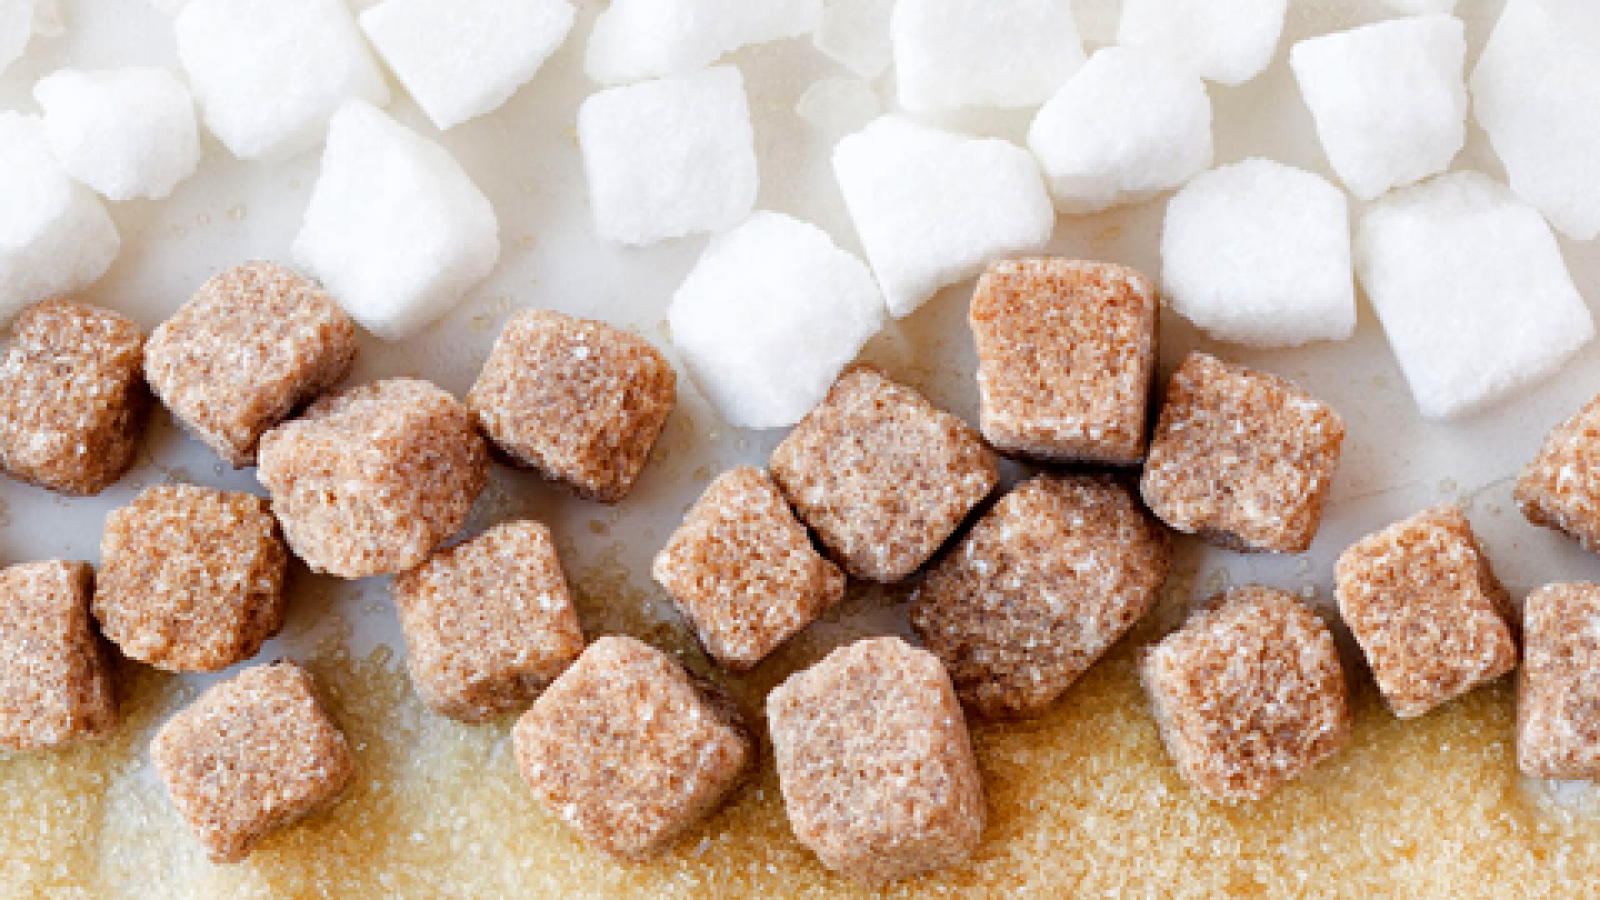 La Mañana - El mito del azúcar moreno: ¿Es más saludable que el blanco?